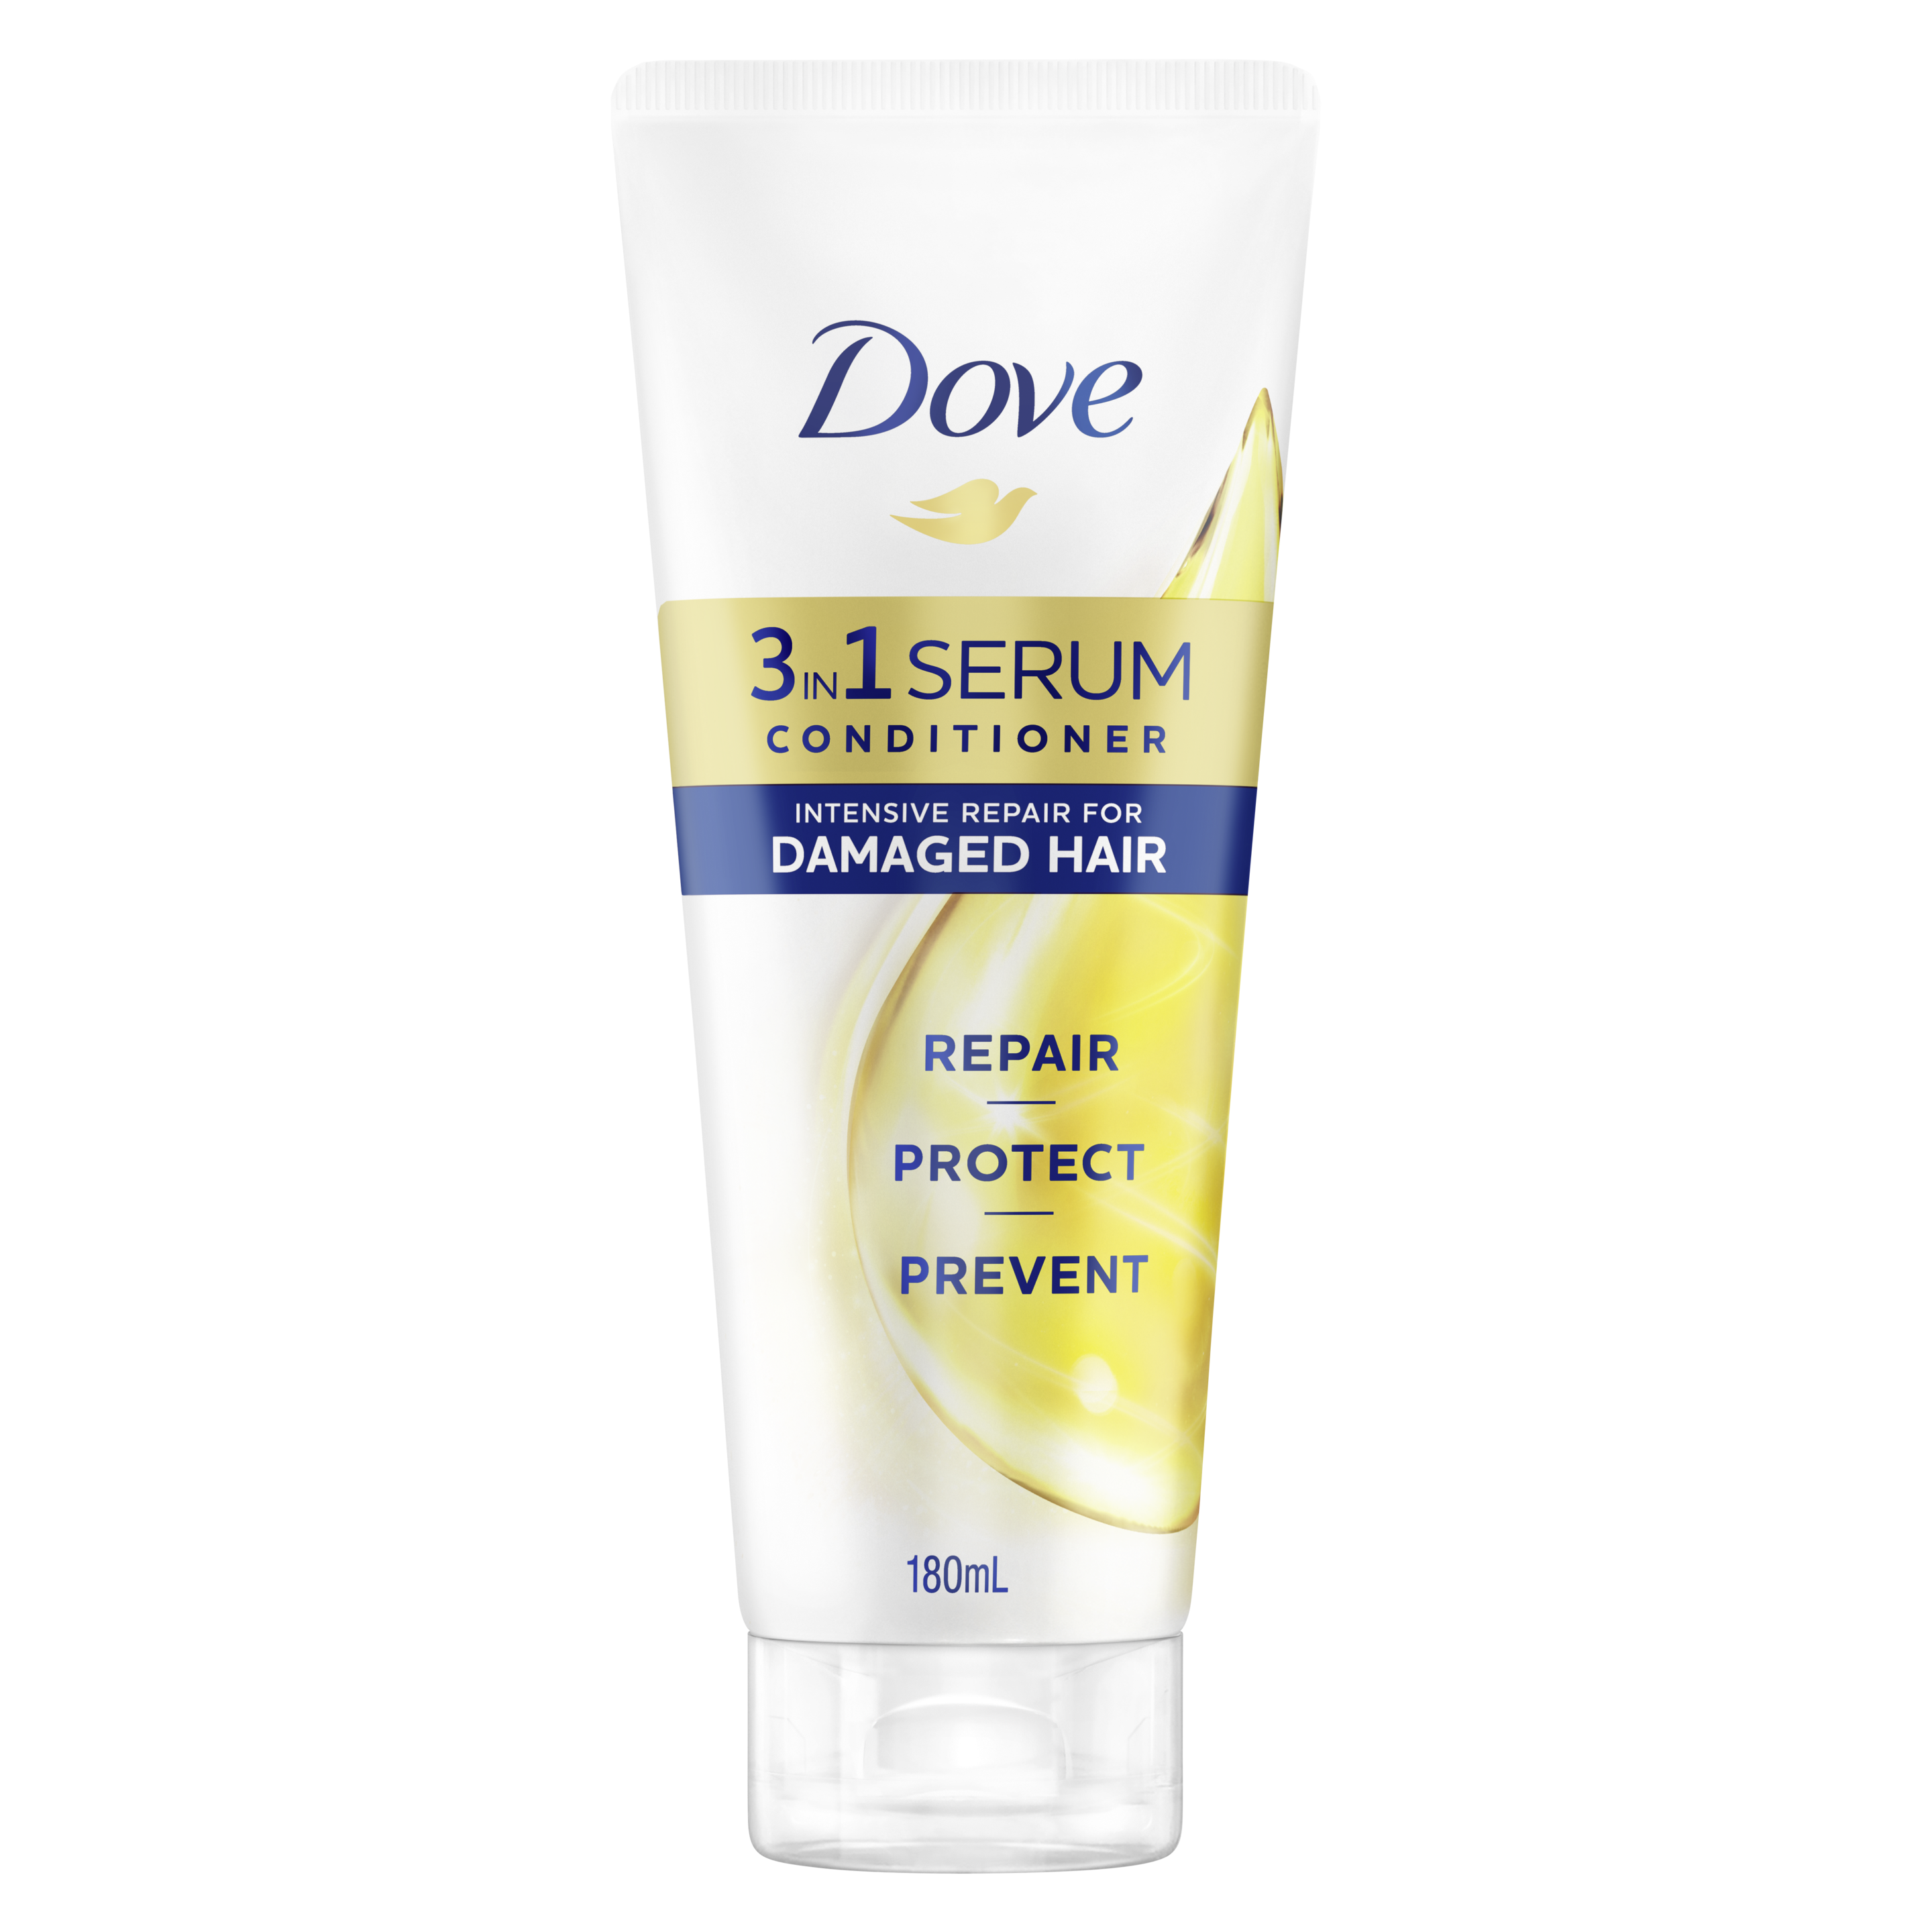 Dove Intensive Repair 3in1 Serum Conditioner 180ml